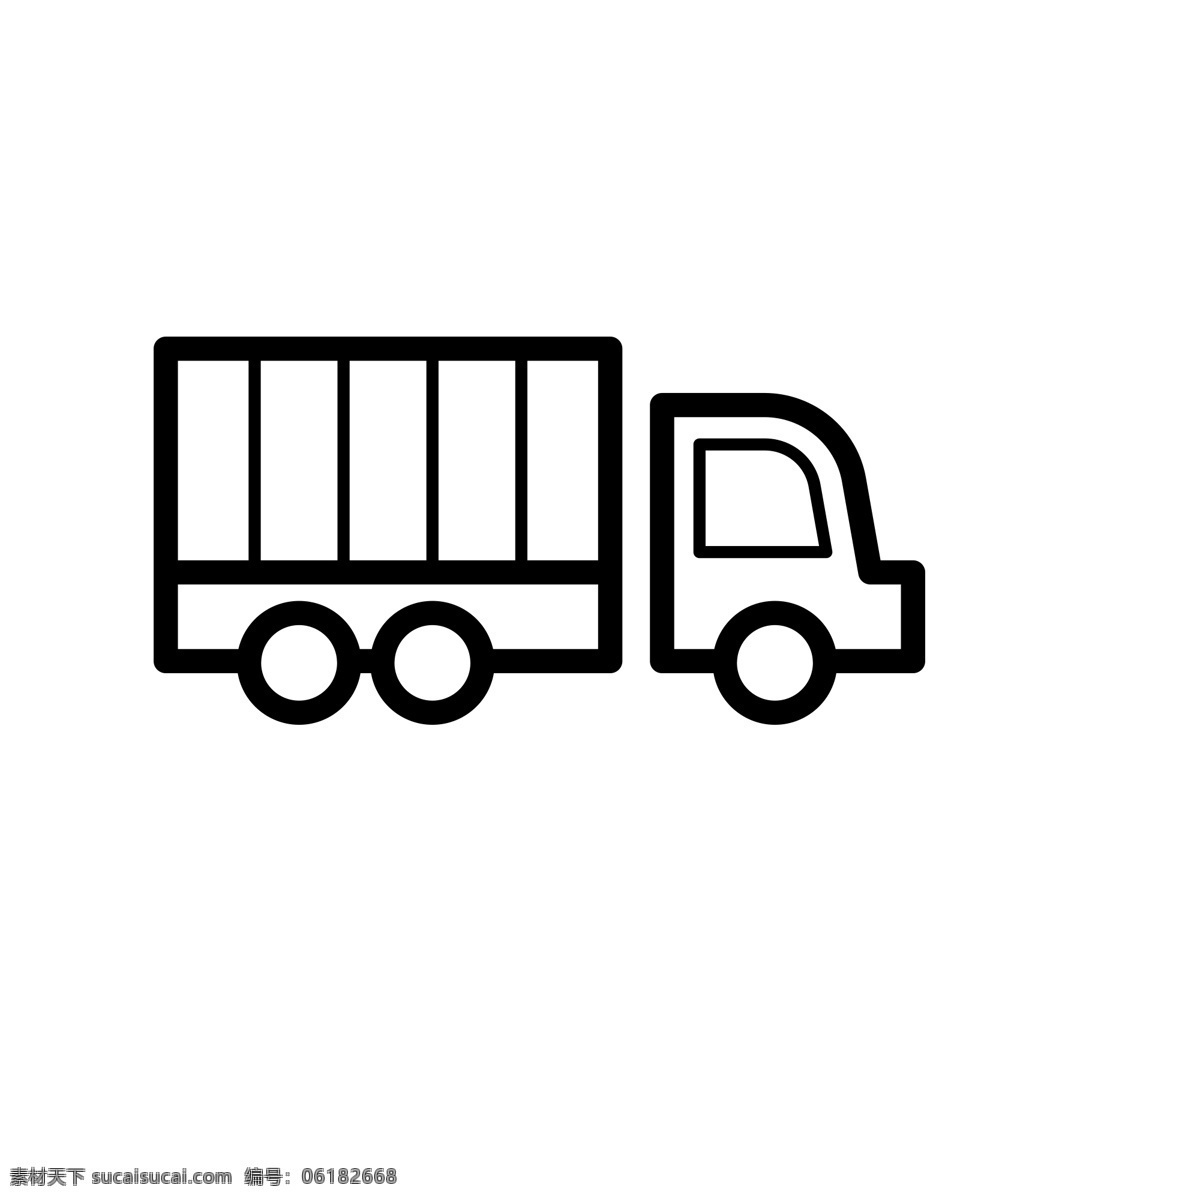 扁平化货车 箱式货车 货物运输 扁平化ui ui图标 手机图标 界面ui 网页ui h5图标